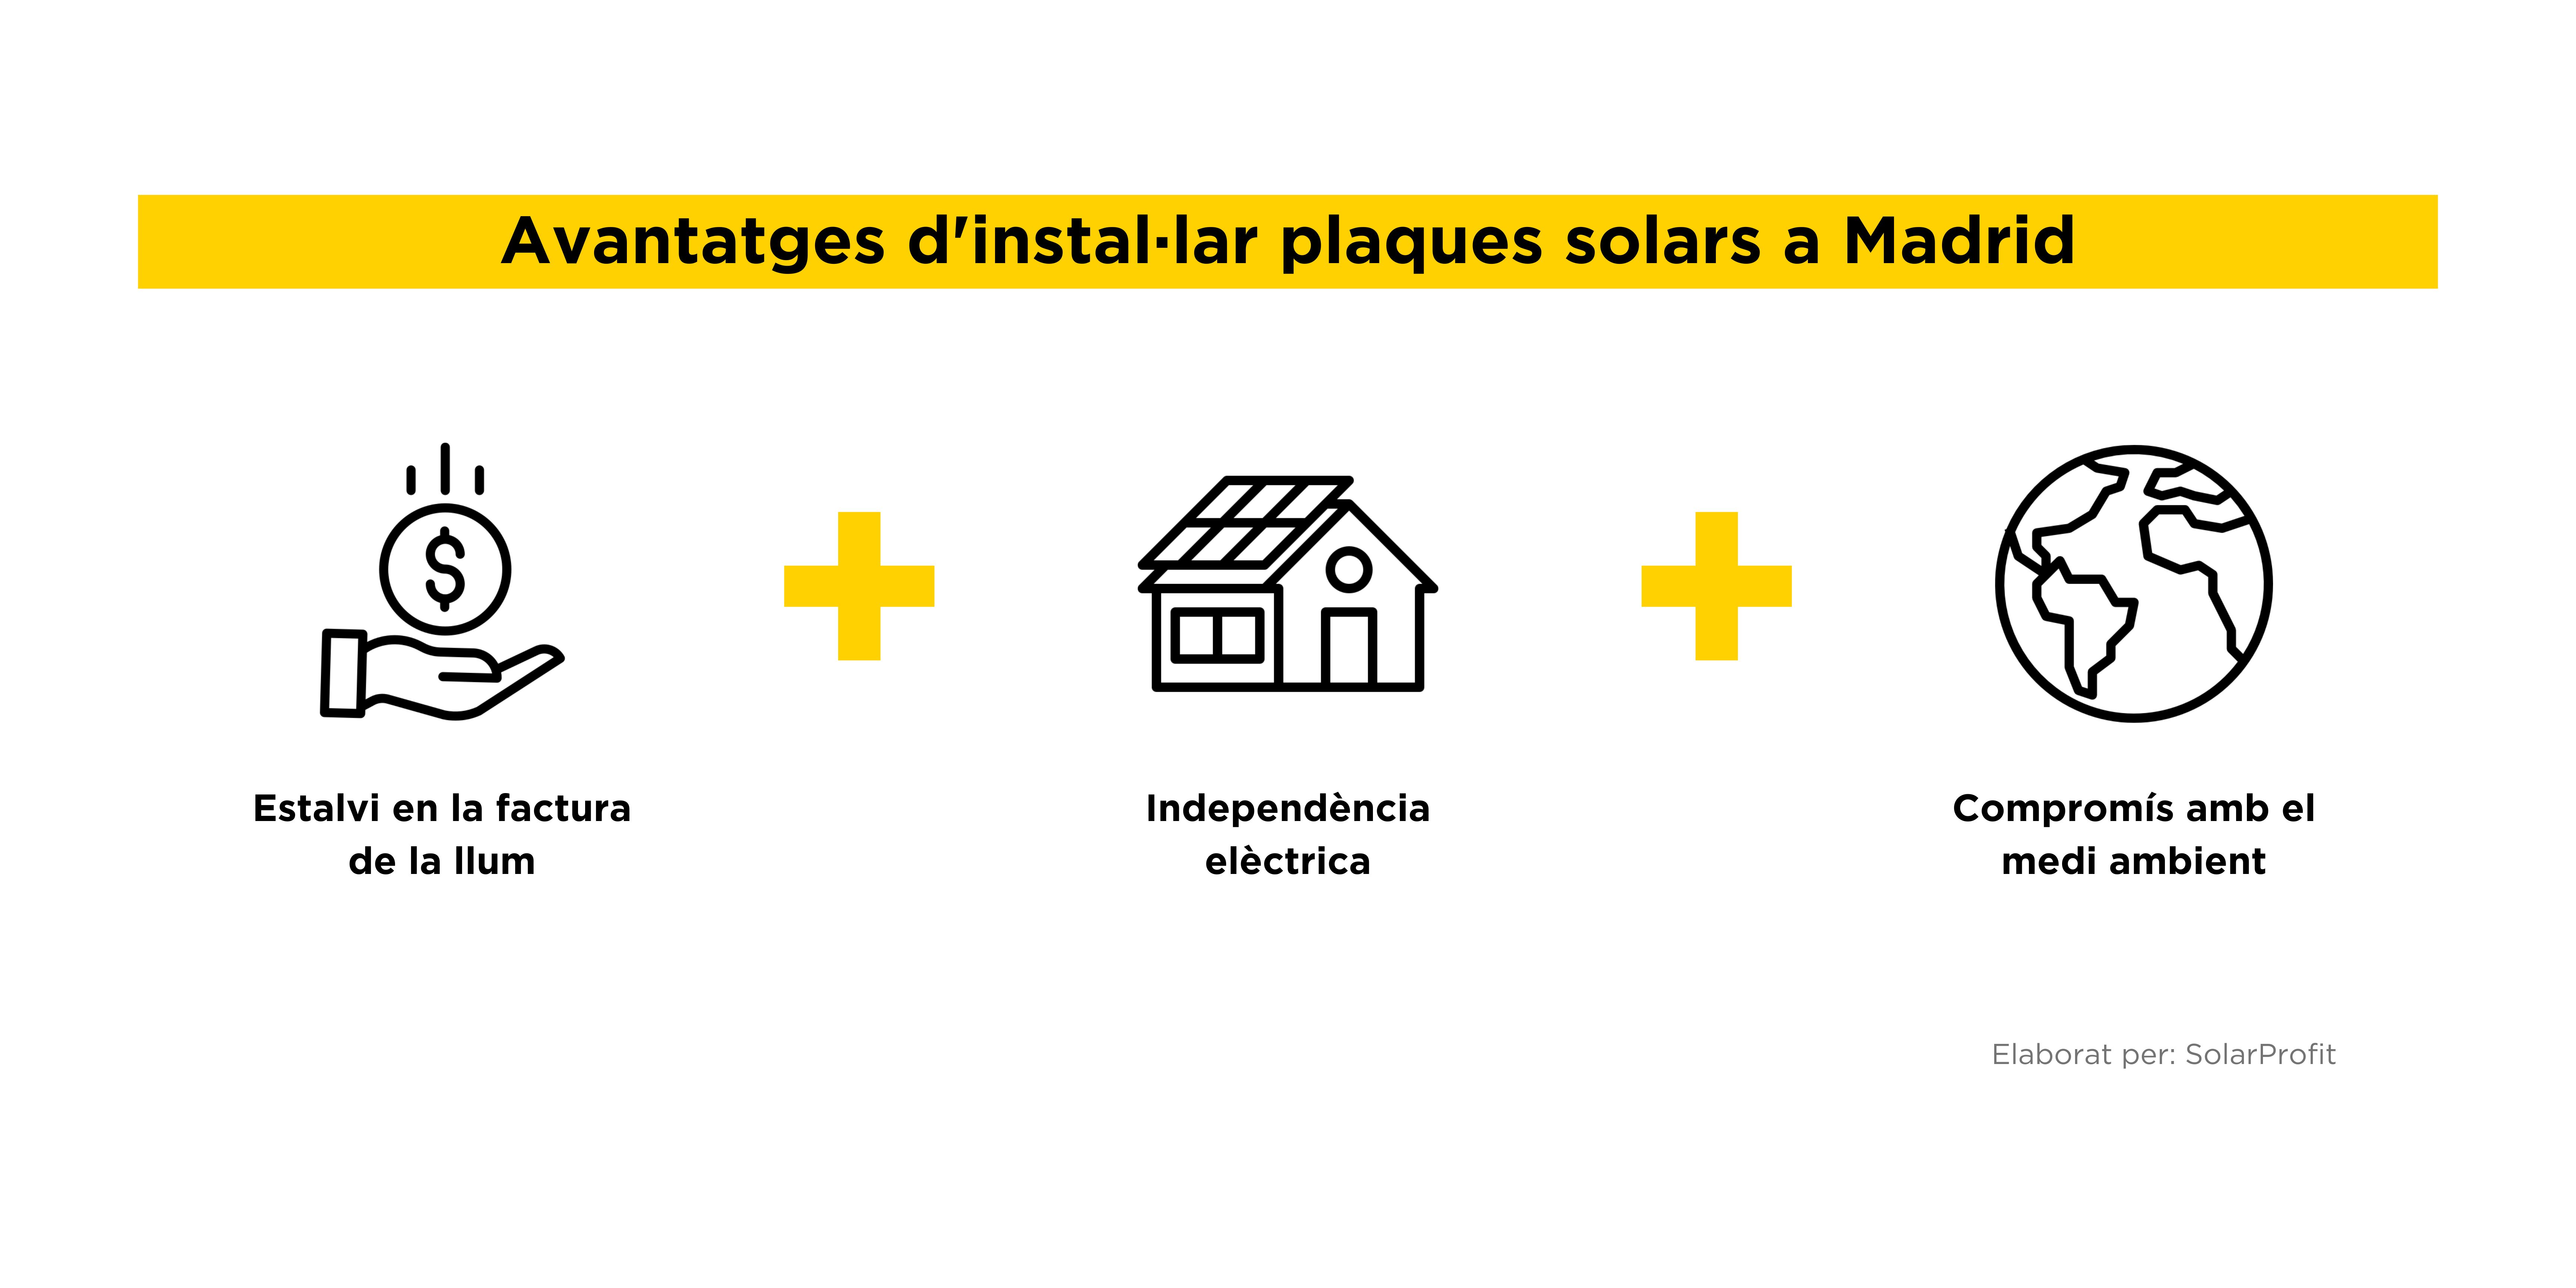 Avantatges plaques solars Madrid